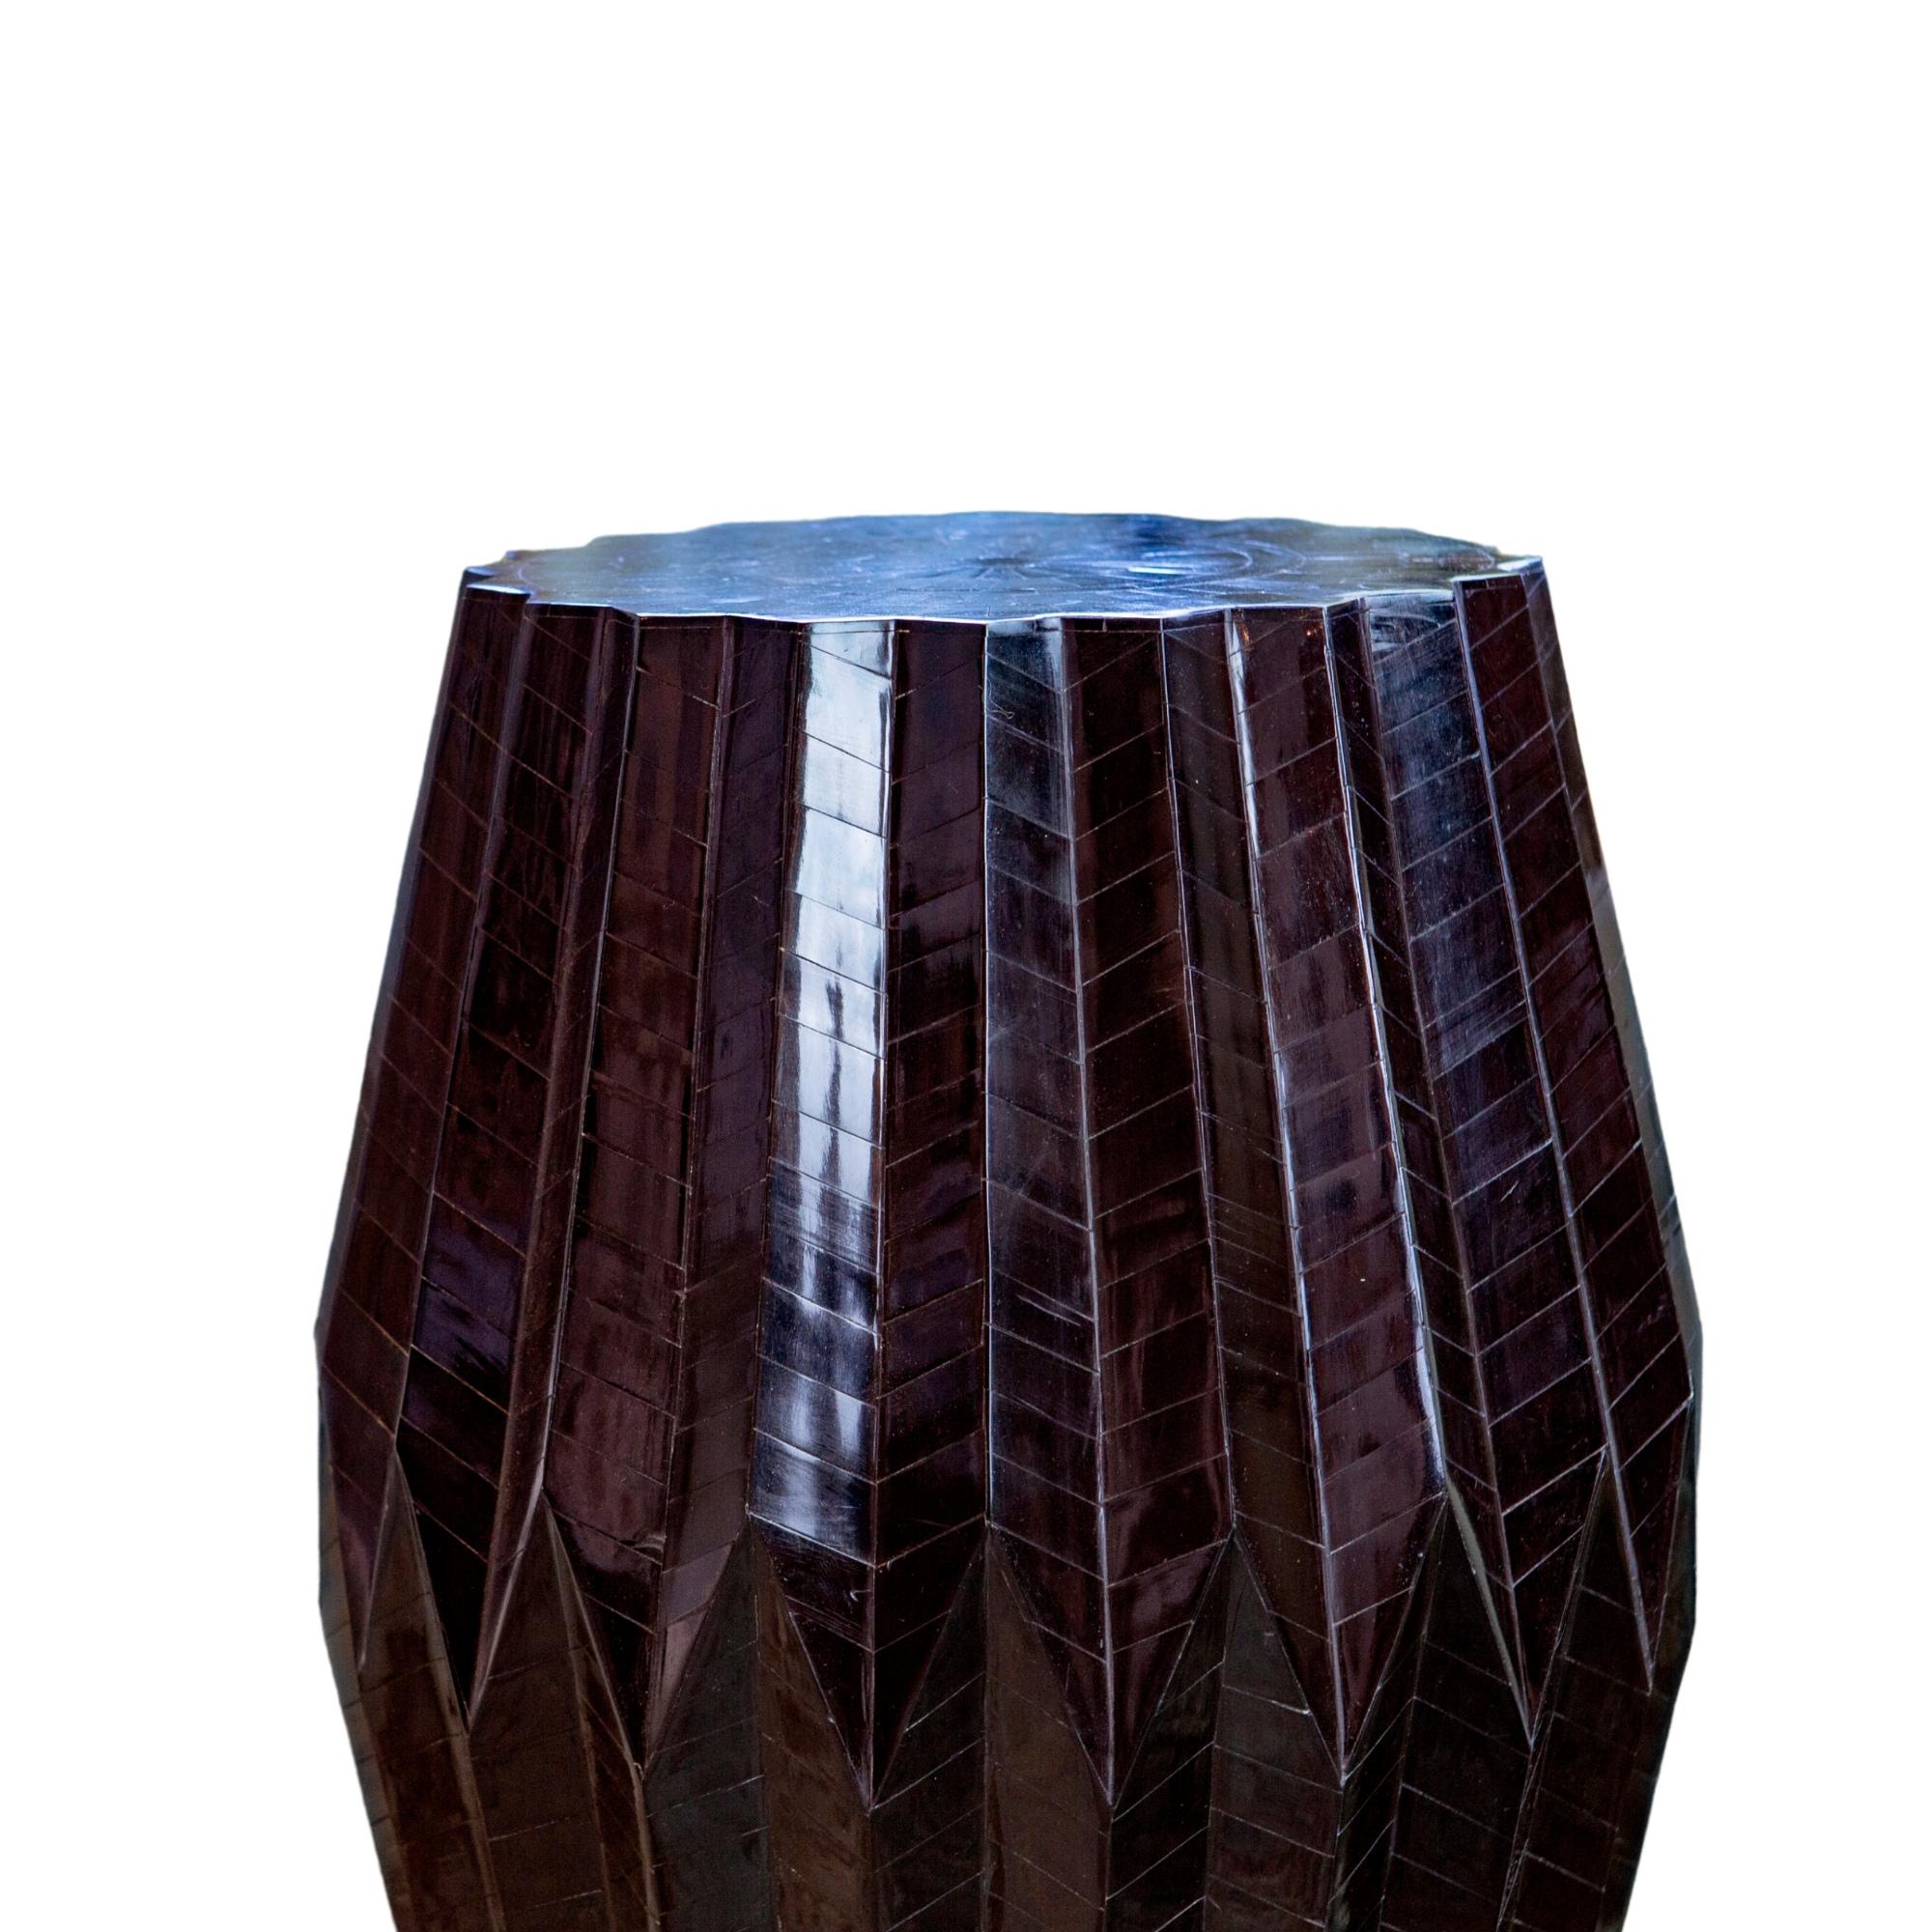 Cette table d'appoint, qui ressemble à son homonyme, le tabla, un tambour de percussion indien, présente une forme sculpturale. Cette table primée est fabriquée à partir d'une base en bois et surmontée d'éclats d'os anguleux pour créer un motif